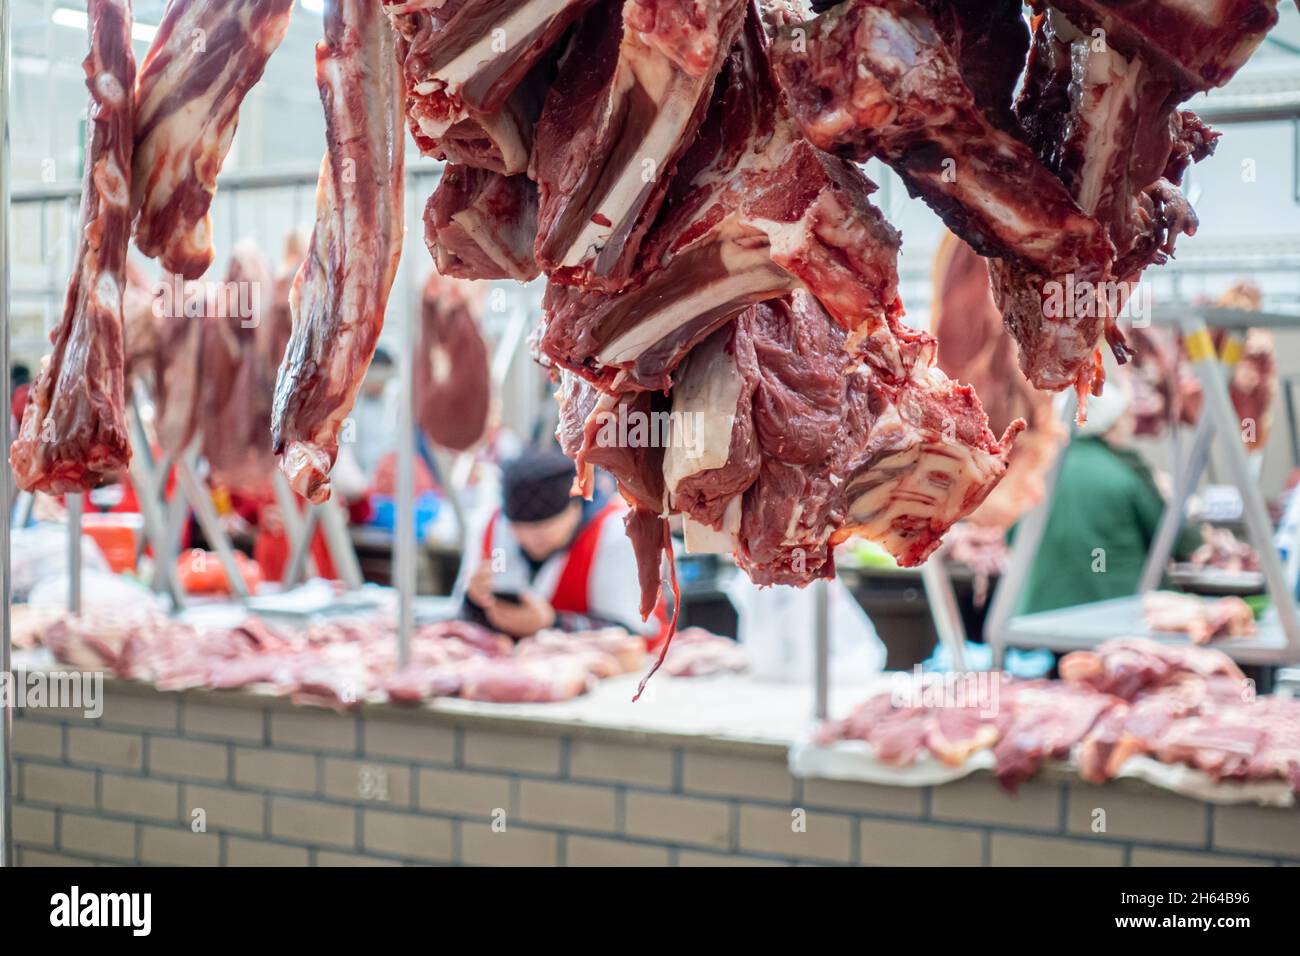 Aufgehängtes rohes Fleisch, das auf dem Altyn Orda-Markt, dem größten Markt in Almaty, Kasachstan, verkauft wird Stockfoto